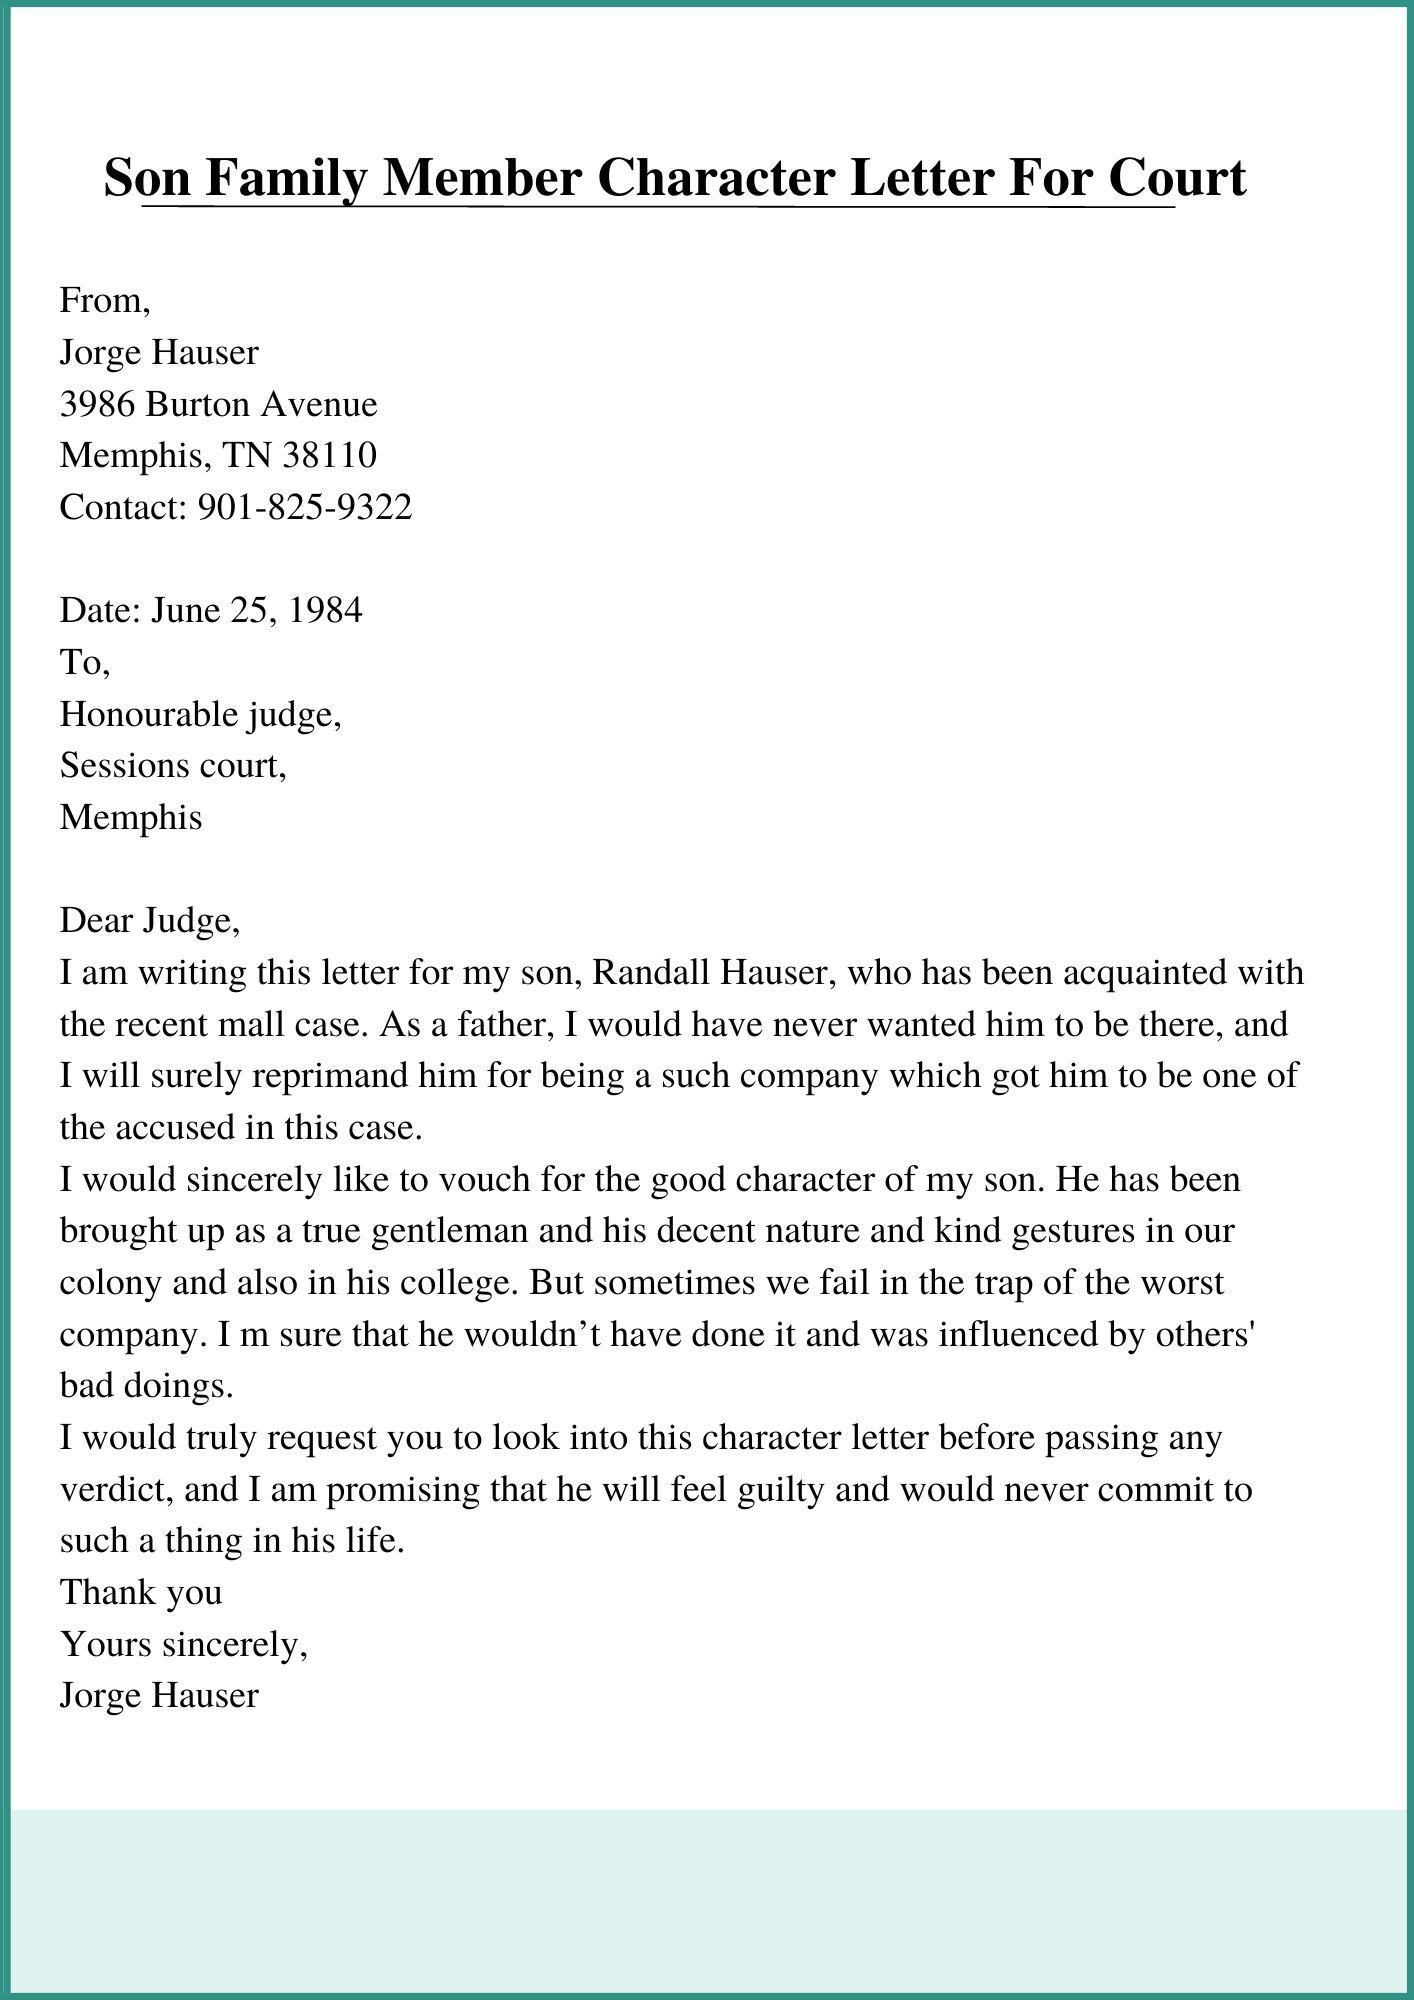 Son Family Member Character Letter For Court